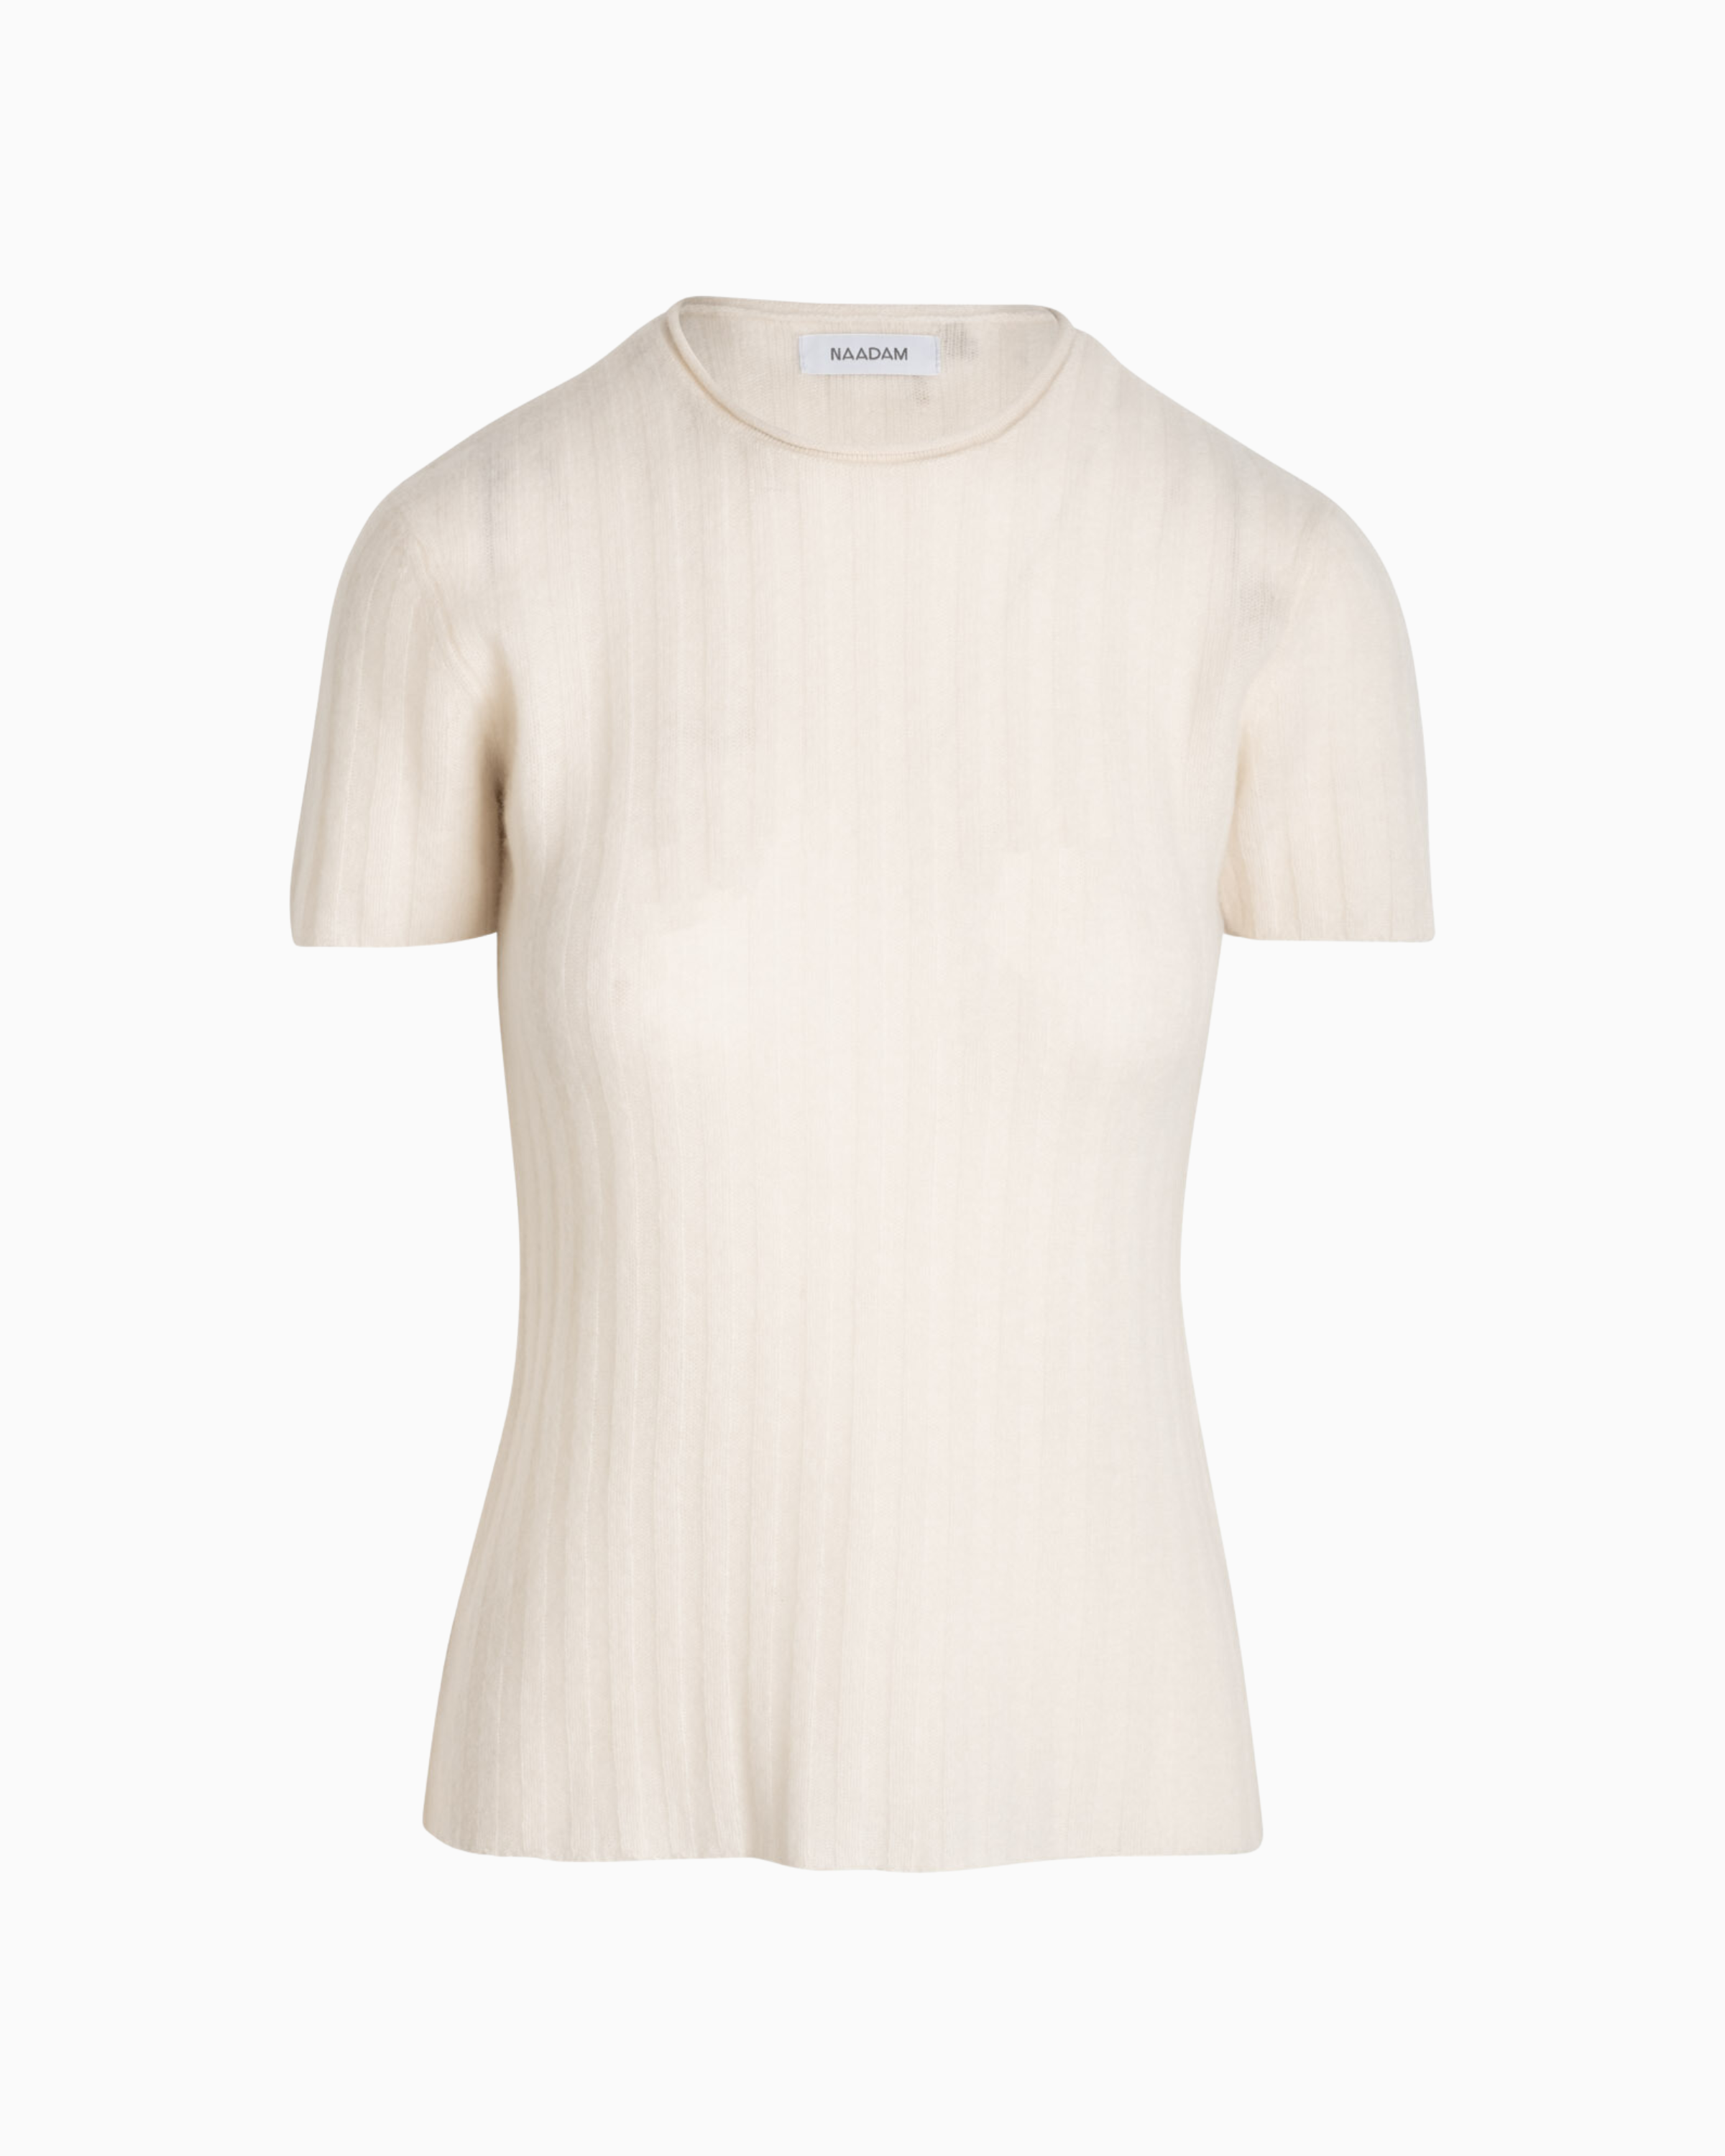 Naadam Cashmere Rib Short Sleeve Sweater in White